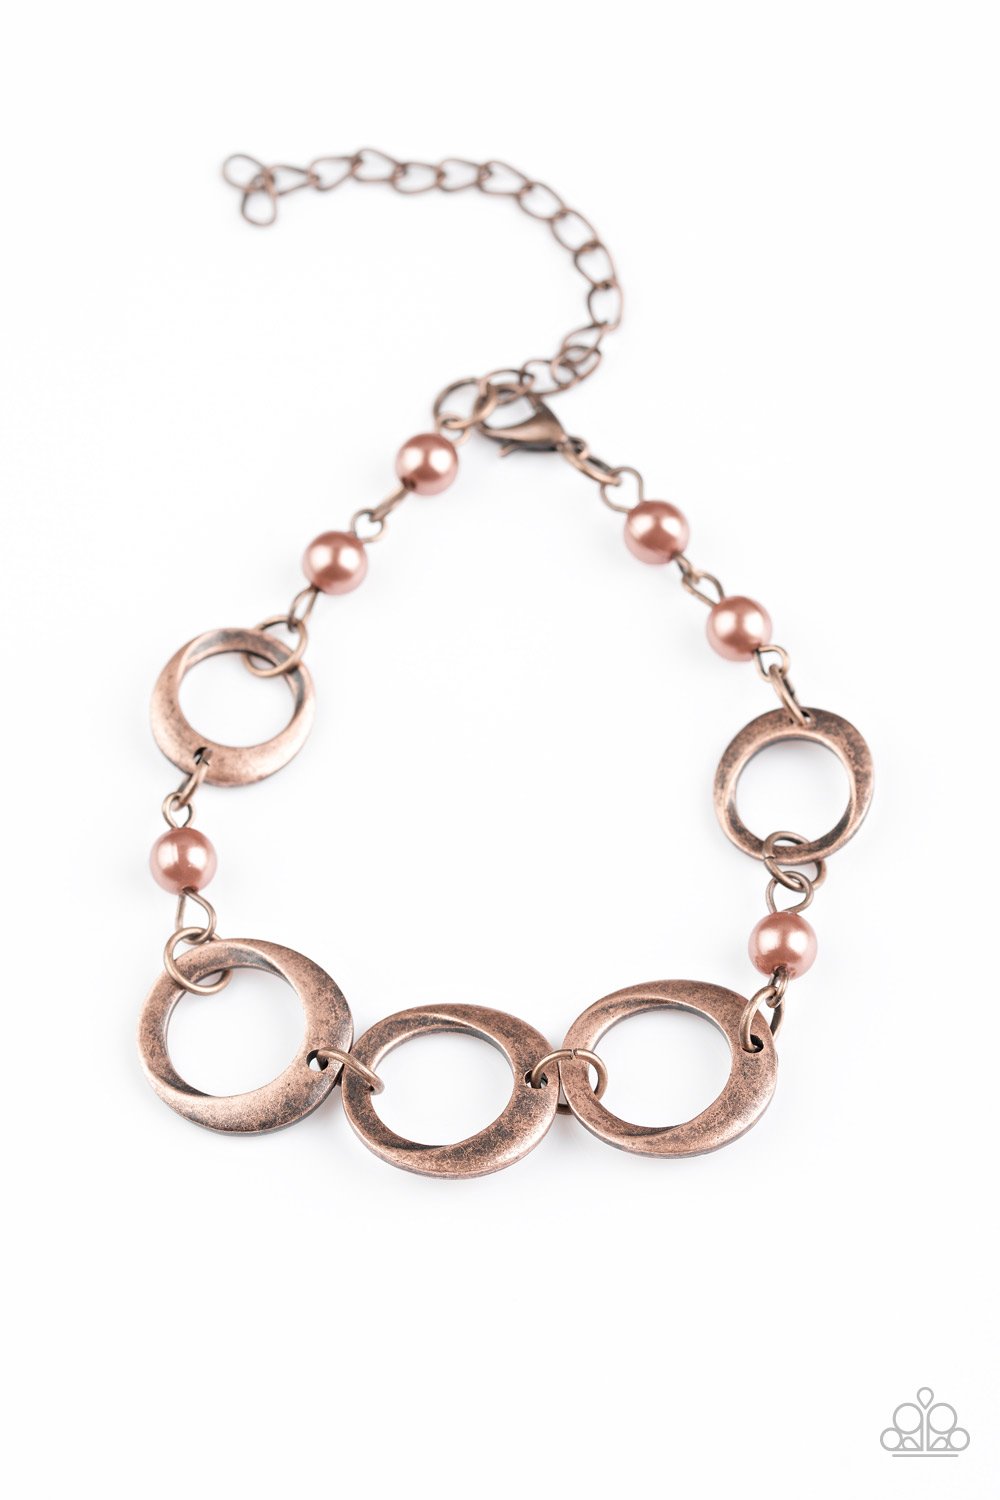 Paparazzi Bracelet ~ Poised and Polished - Copper